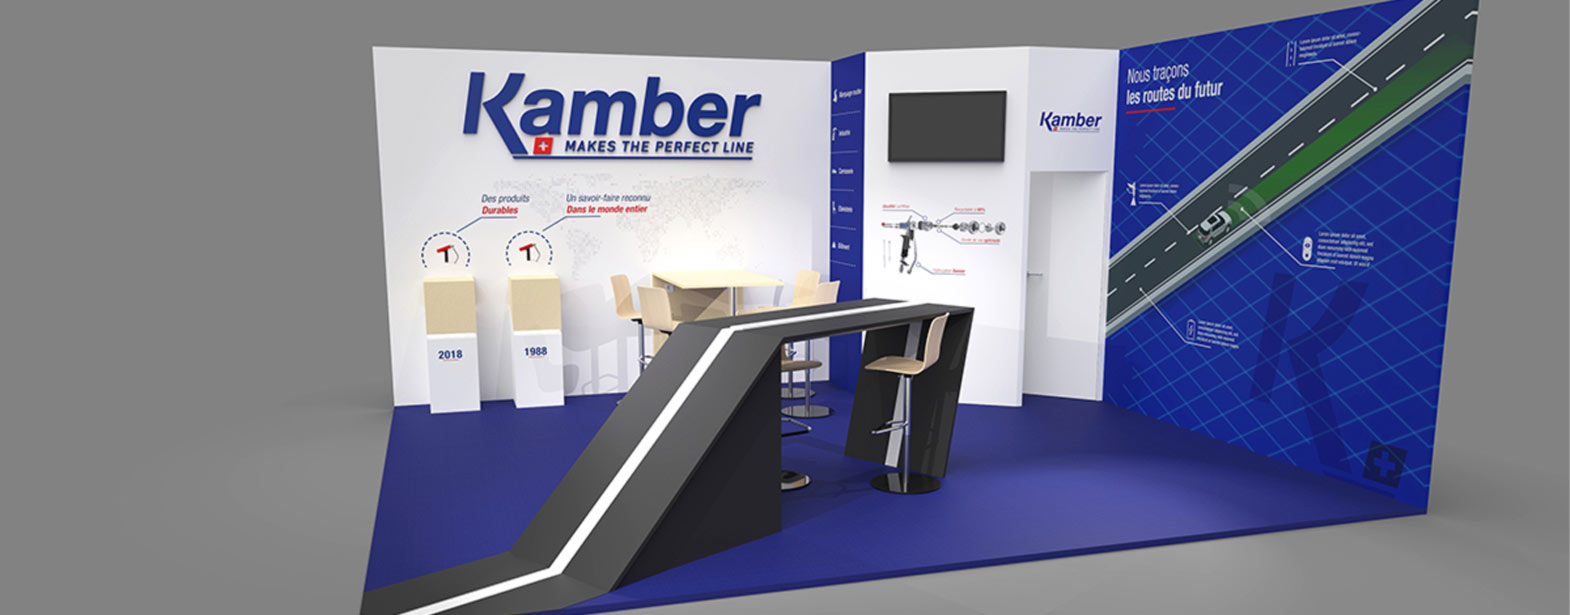 La société suisse Kamber est spécialisée dans la fabrication de pistolets de pulvérisation. Elle est présente dans le domaine du marquage routier, la carrosserie, l’industrie, l’ébénisterie et le bâtiment.